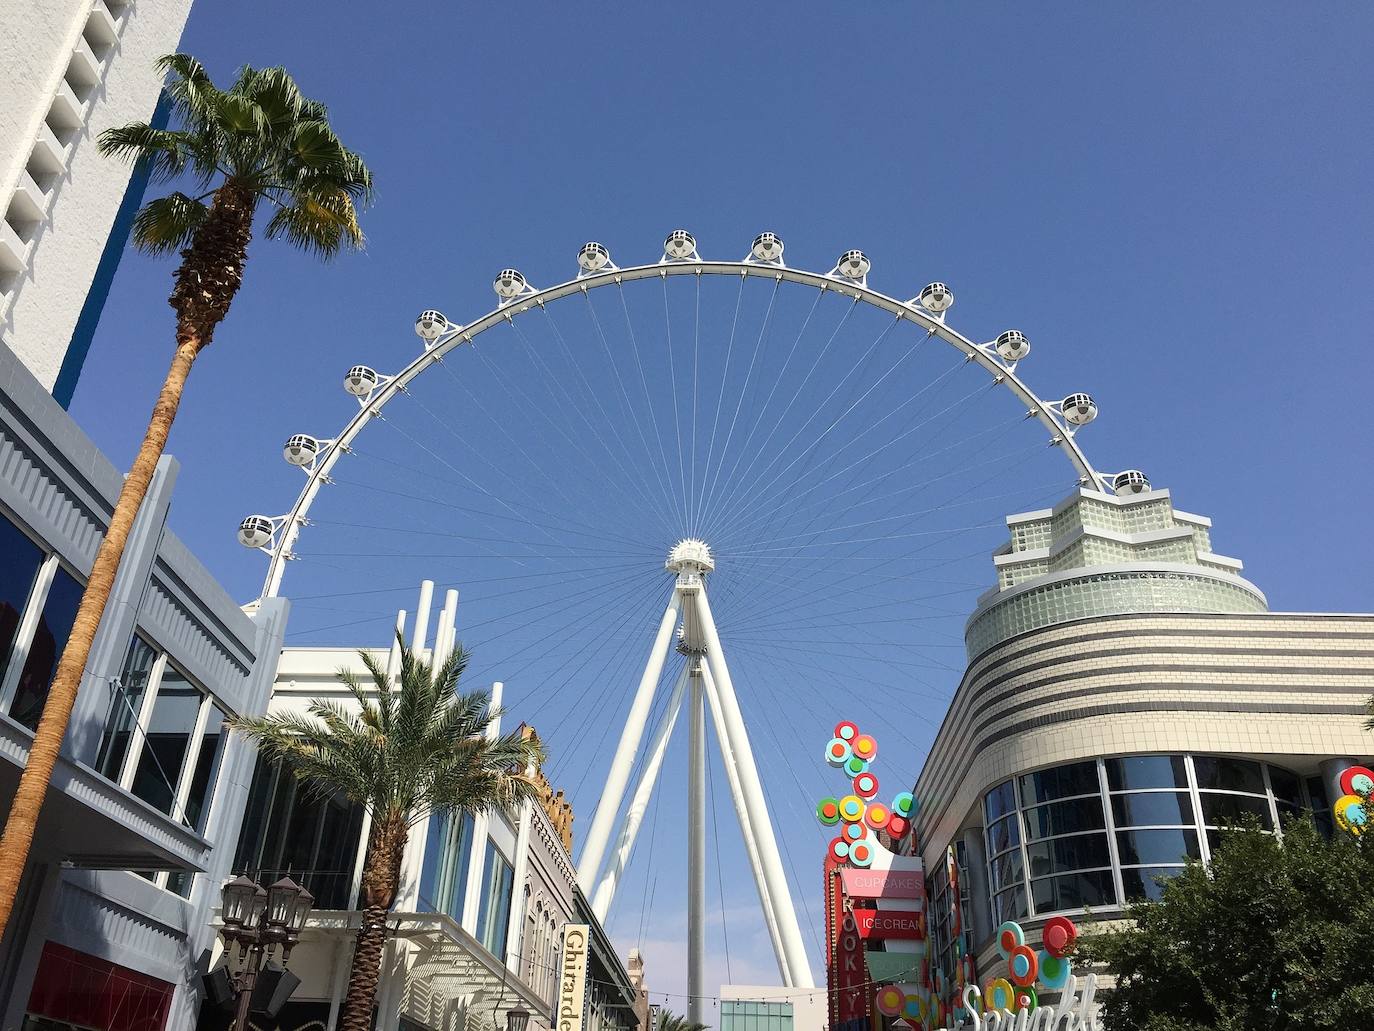 La noria de observación más alta del mundo se llama High Roller y se alza en Las Vegas. Cuenta con 28 cabinas, con capacidad para 40 personas cada una, y una altura de 167 metros.